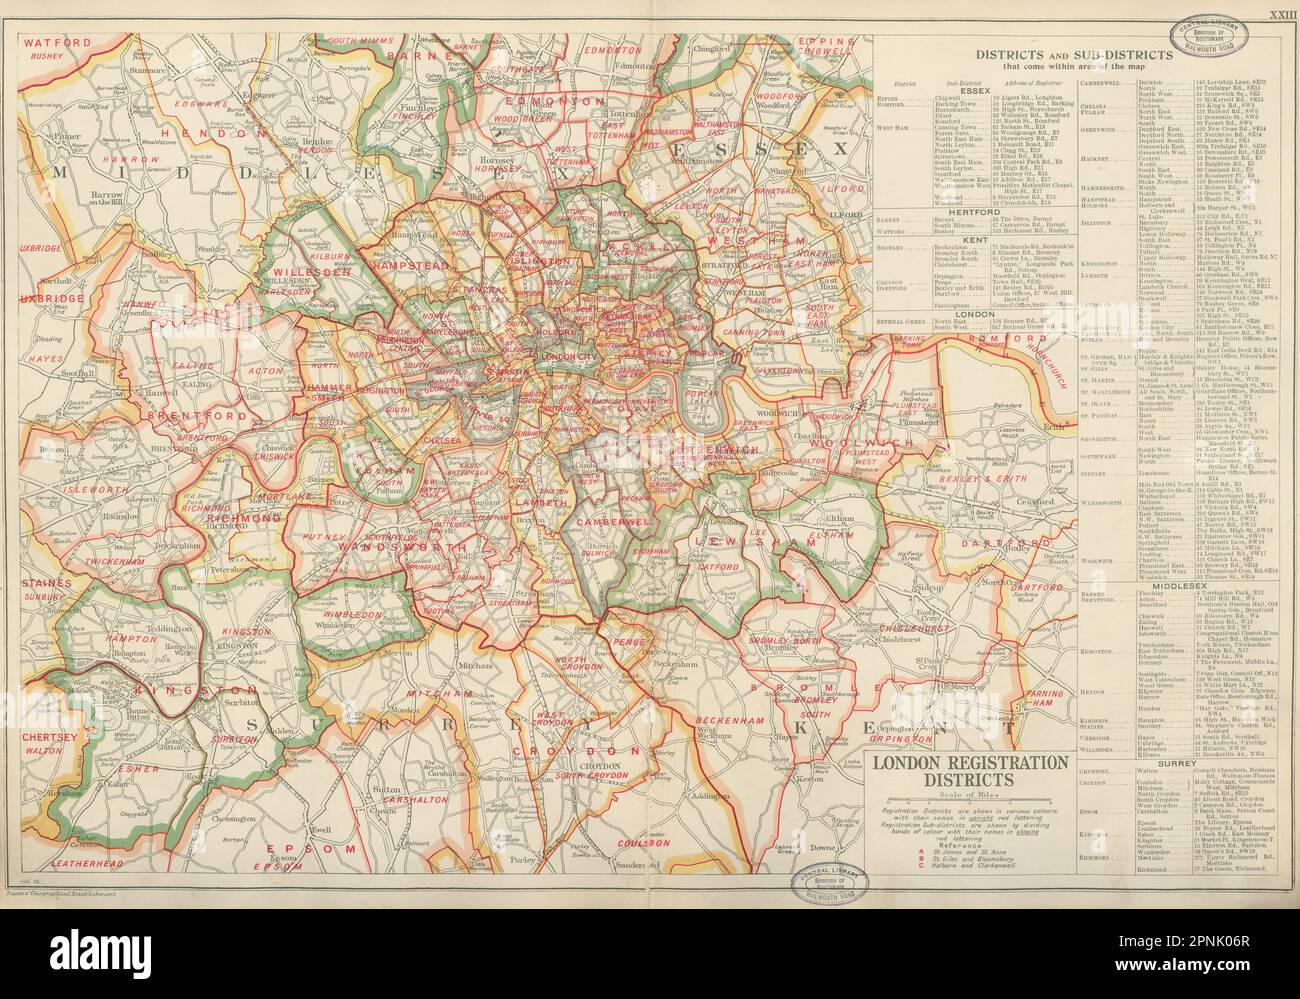 LONDONER ZULASSUNGSBEZIRKE UND -UNTERBEZIRKE. Vintage-Karte. SPECK 1934 Jahre alt Stockfoto